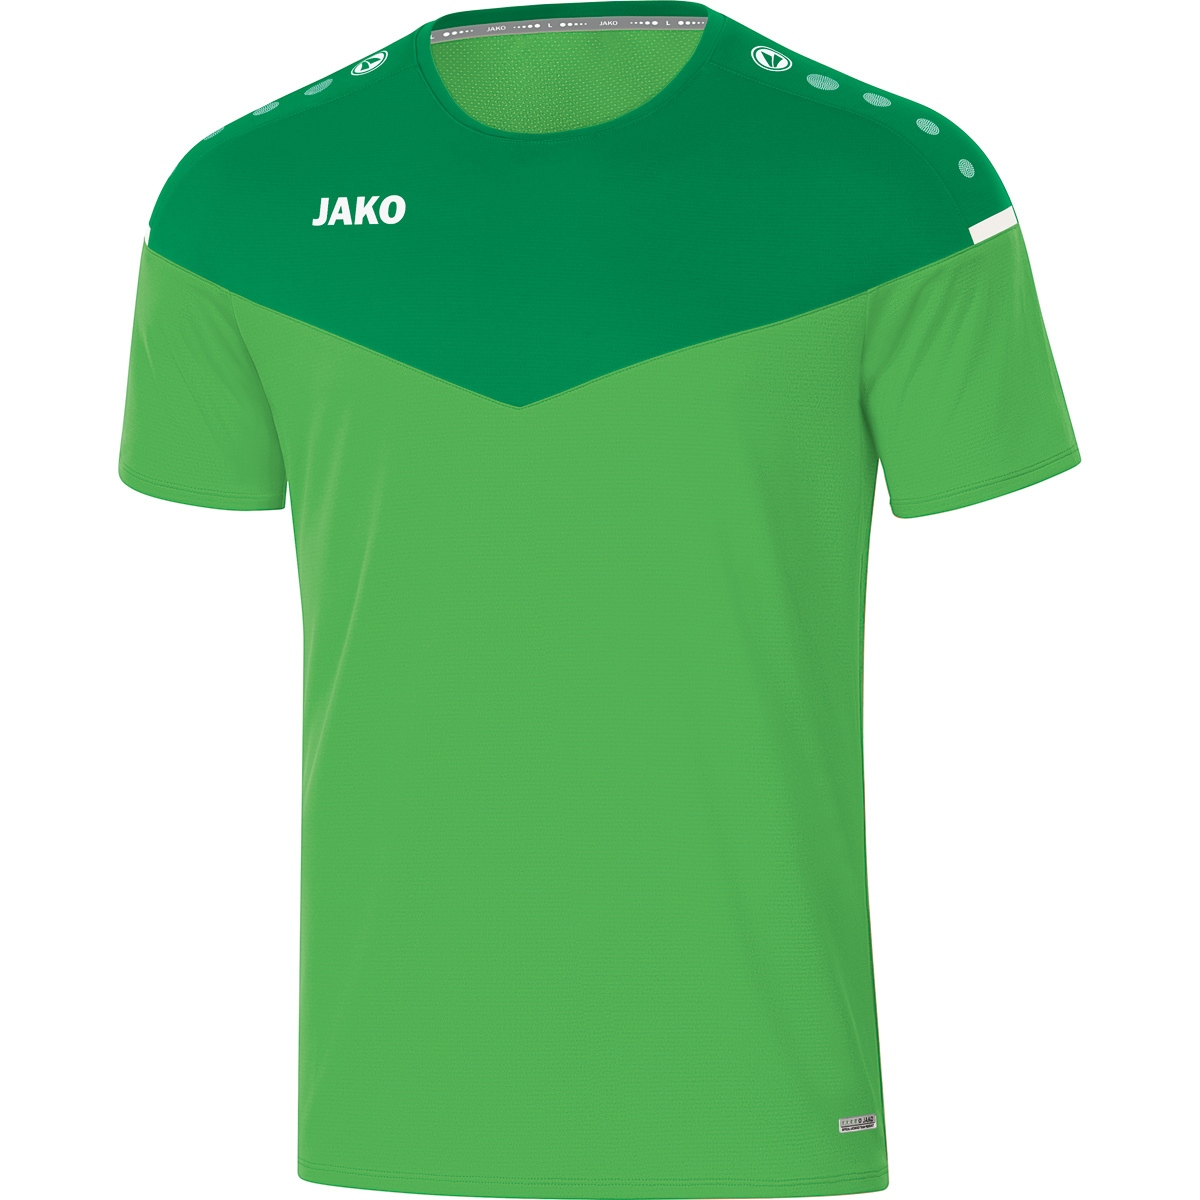 T-Shirt JAKO Gr. 6120 soft green/sportgrün, XL, 2.0 Champ Herren,